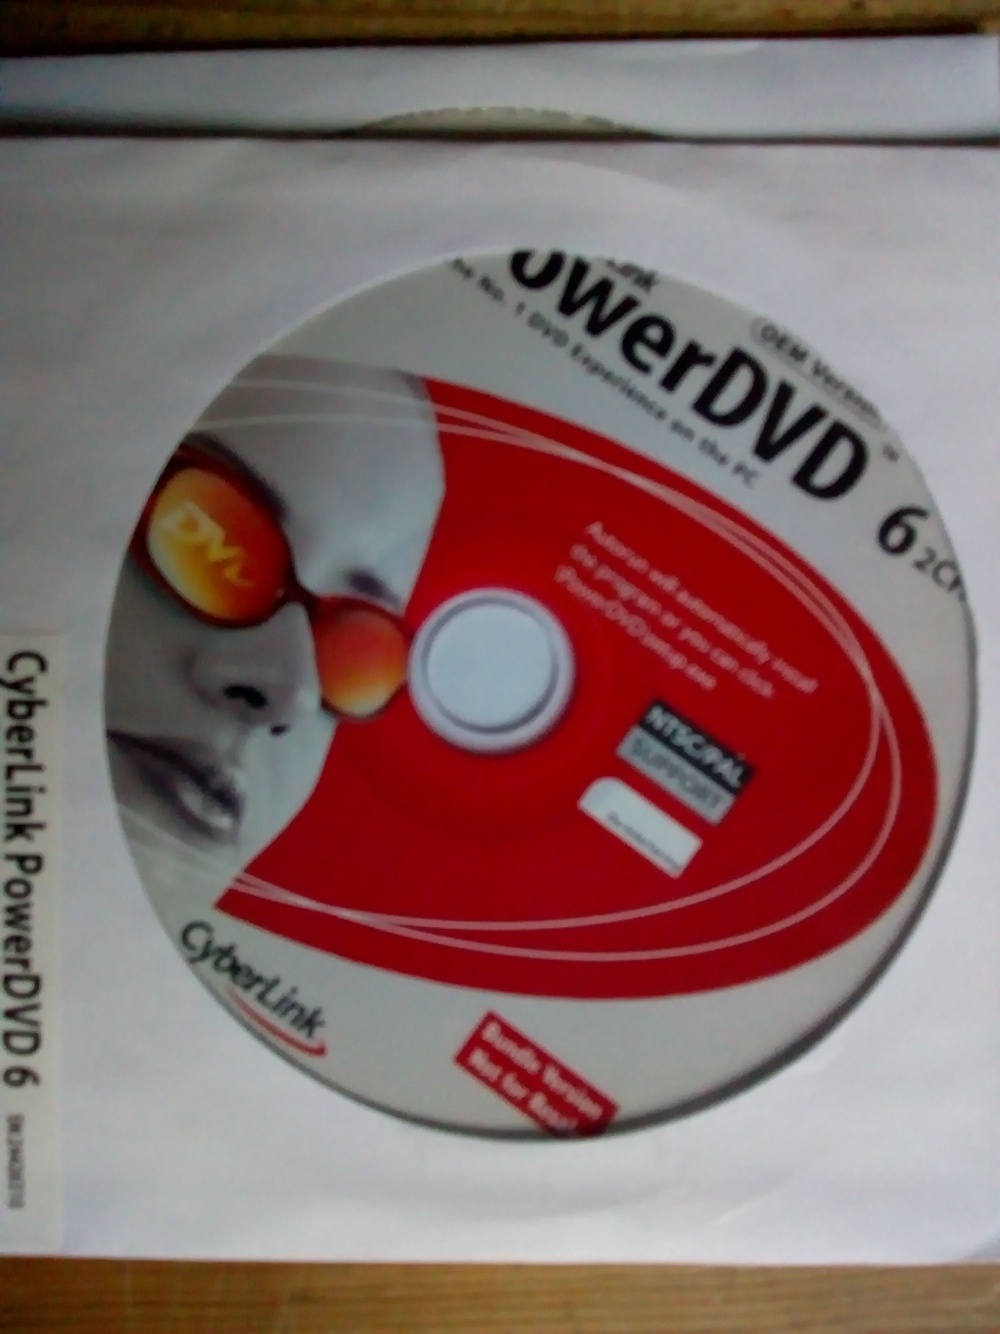 Software CyberLink PowerDVD 6